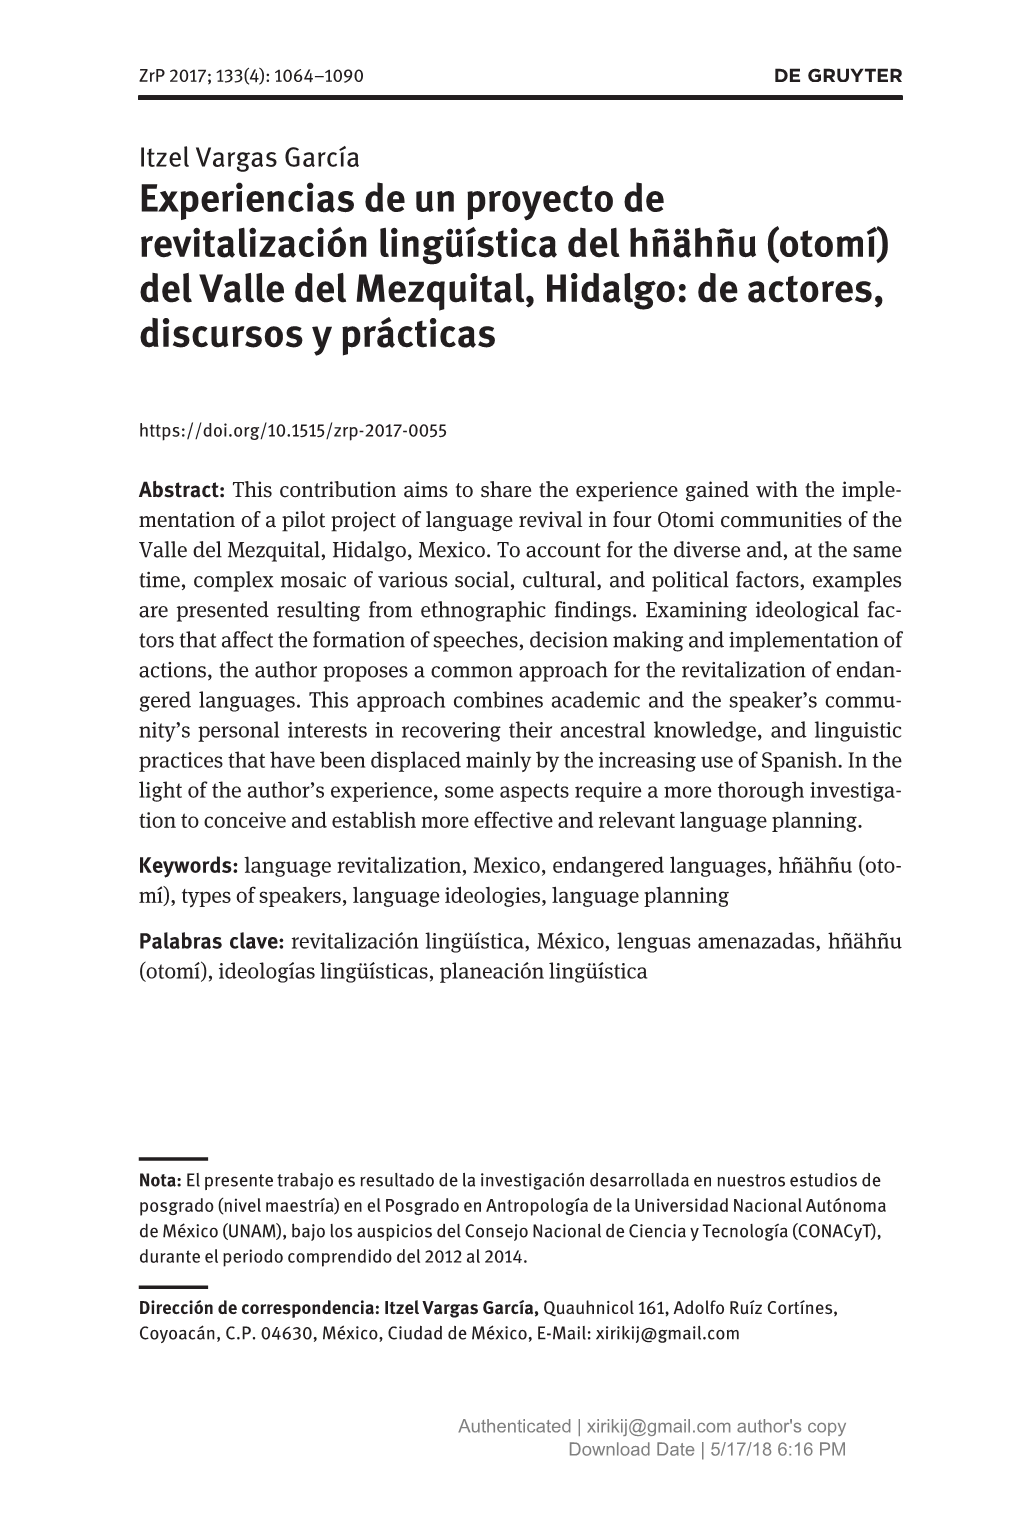 Experiencias De Un Proyecto De Revitalización Lingüística Del Hñähñu (Otomí) Del Valle Del Mezquital, Hidalgo: De Actores, Discursos Y Prácticas